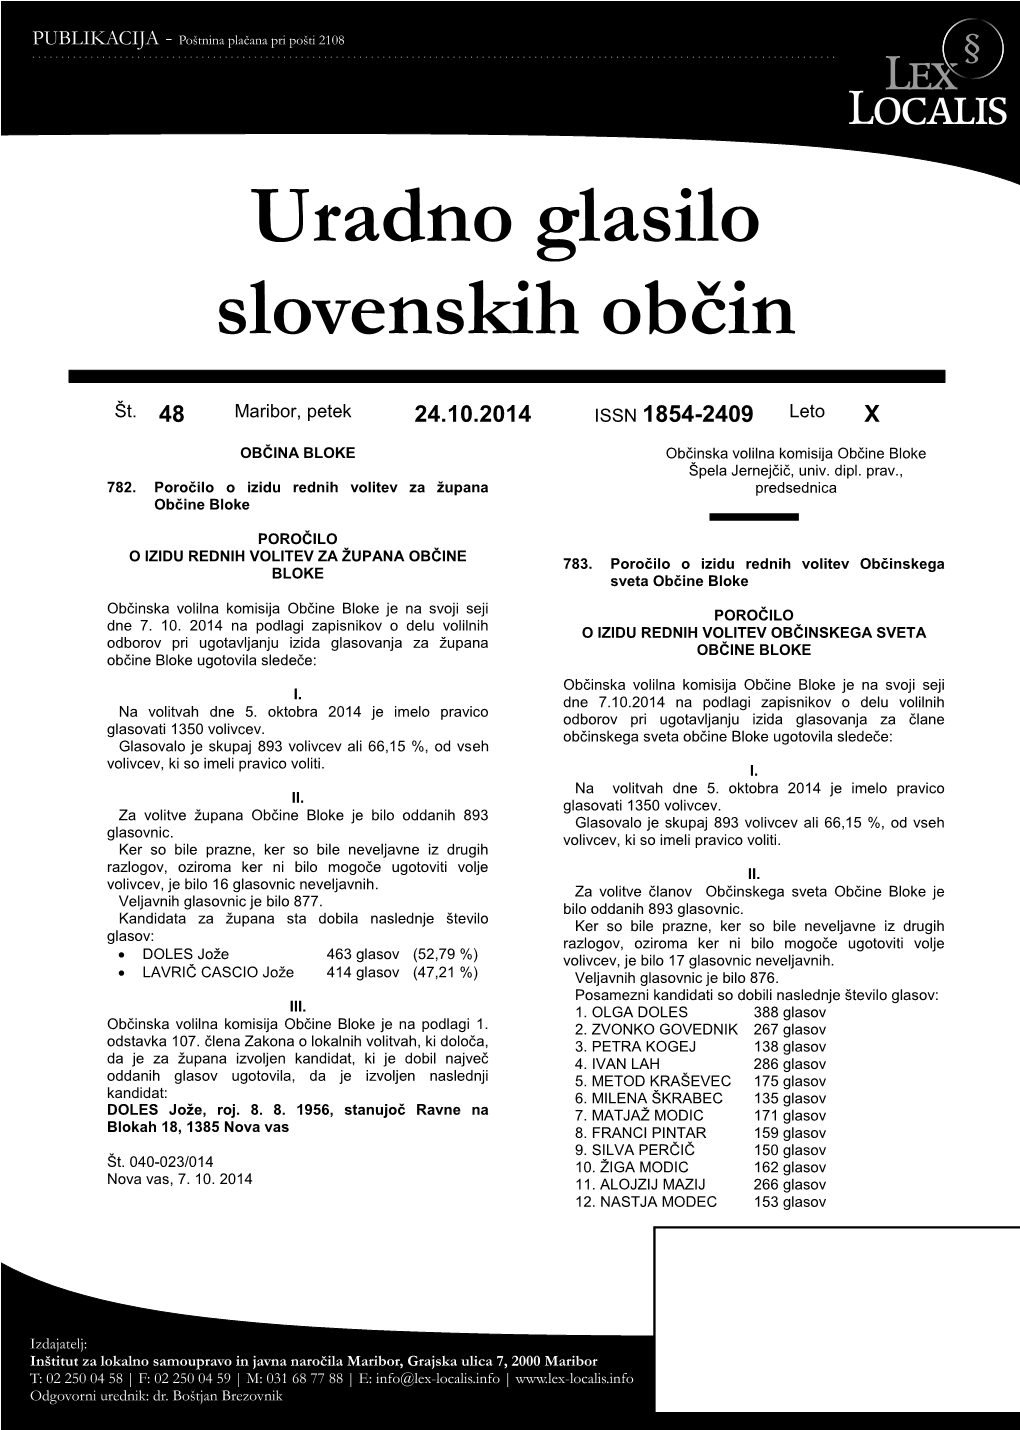 Uradno Glasilo Slovenskih Občin, 14/2013, 12.4.2013